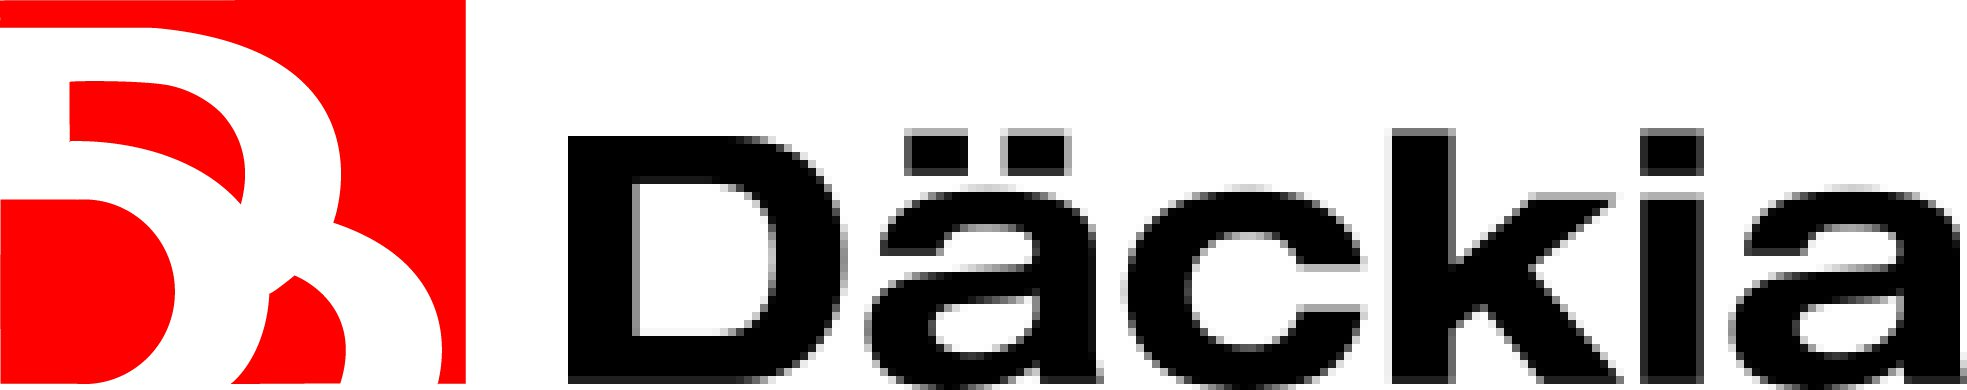 Däckia logo